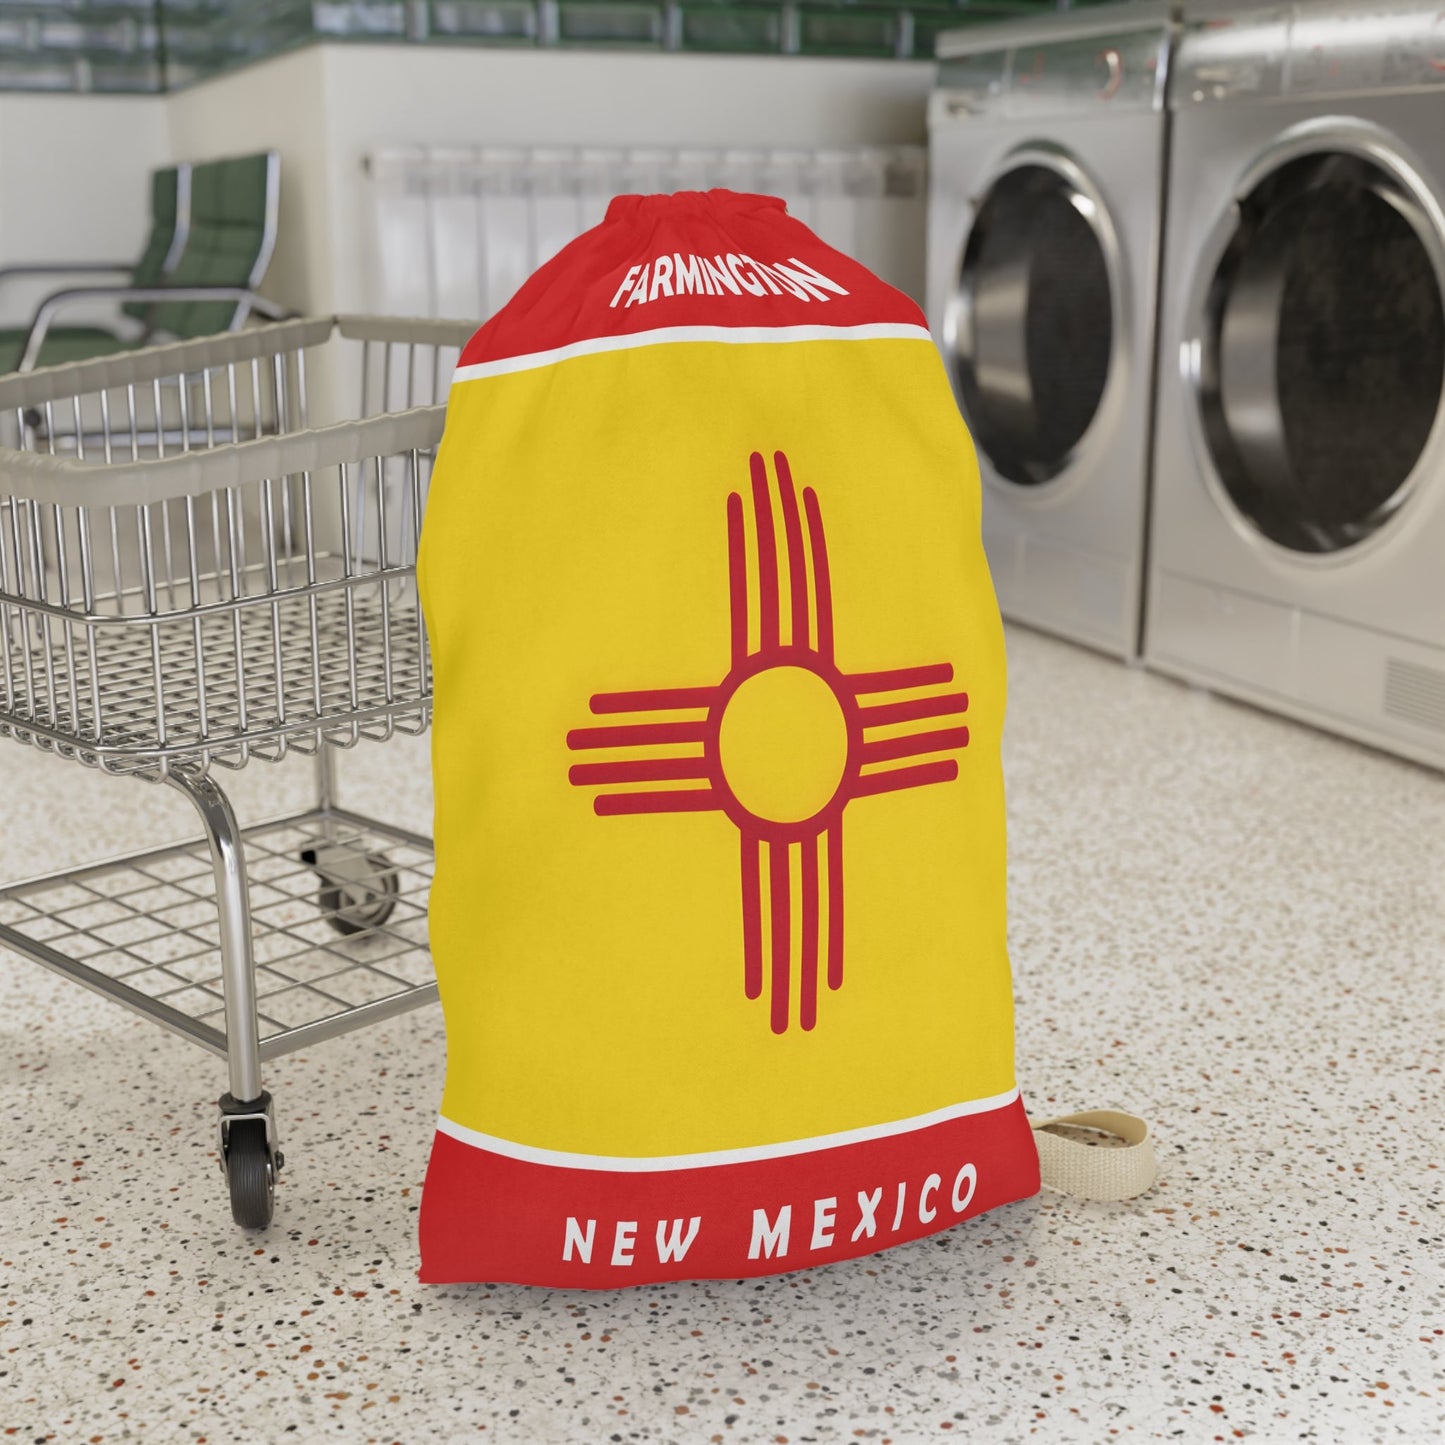 Farmington New Mexico Laundry Bag